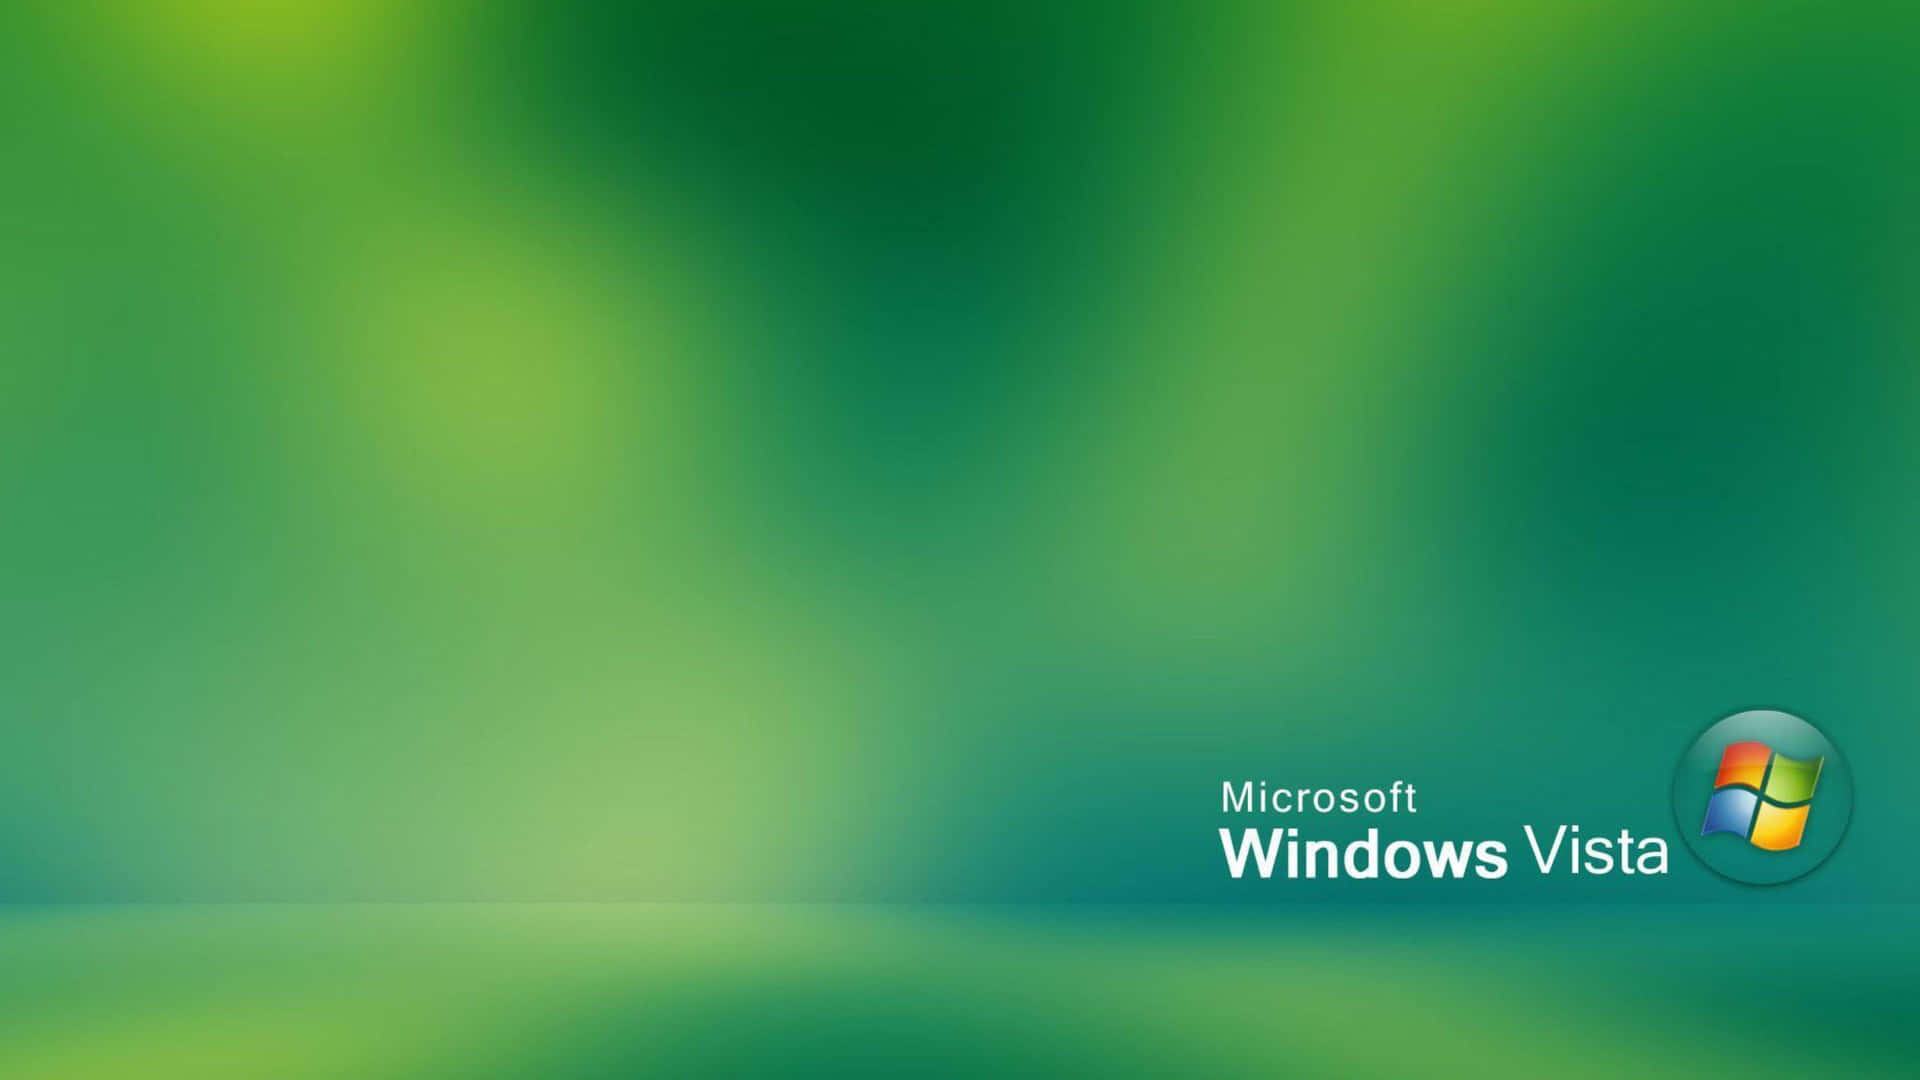 Request] Windows Vista final wallpapers - BetaArchive